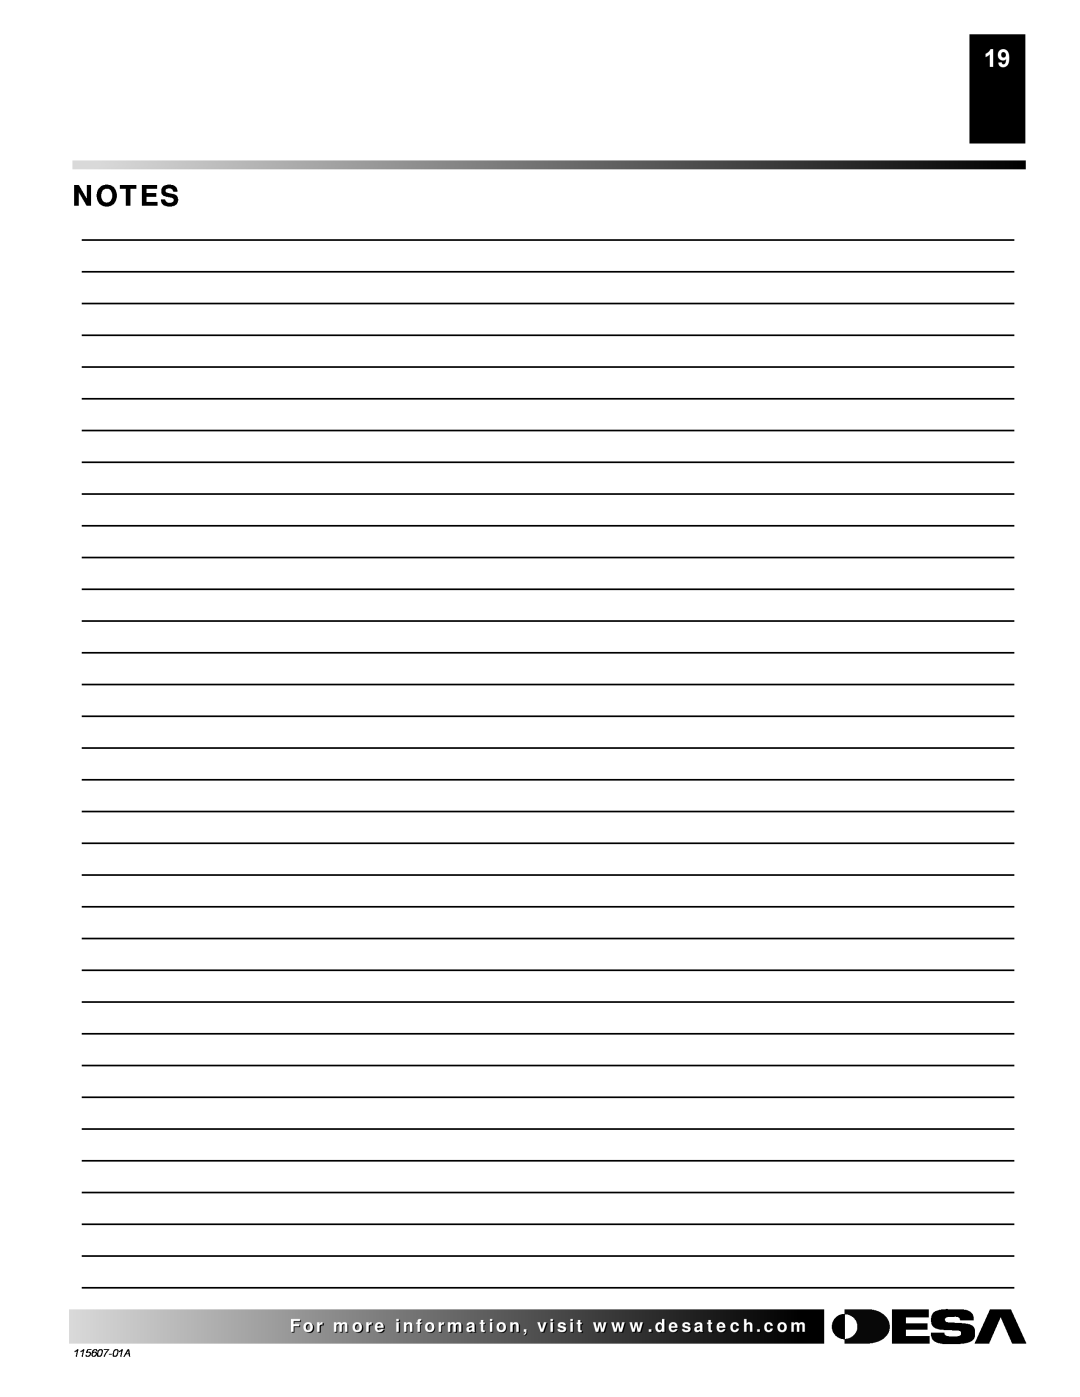 Desa (V)PN36-A manual Notes 